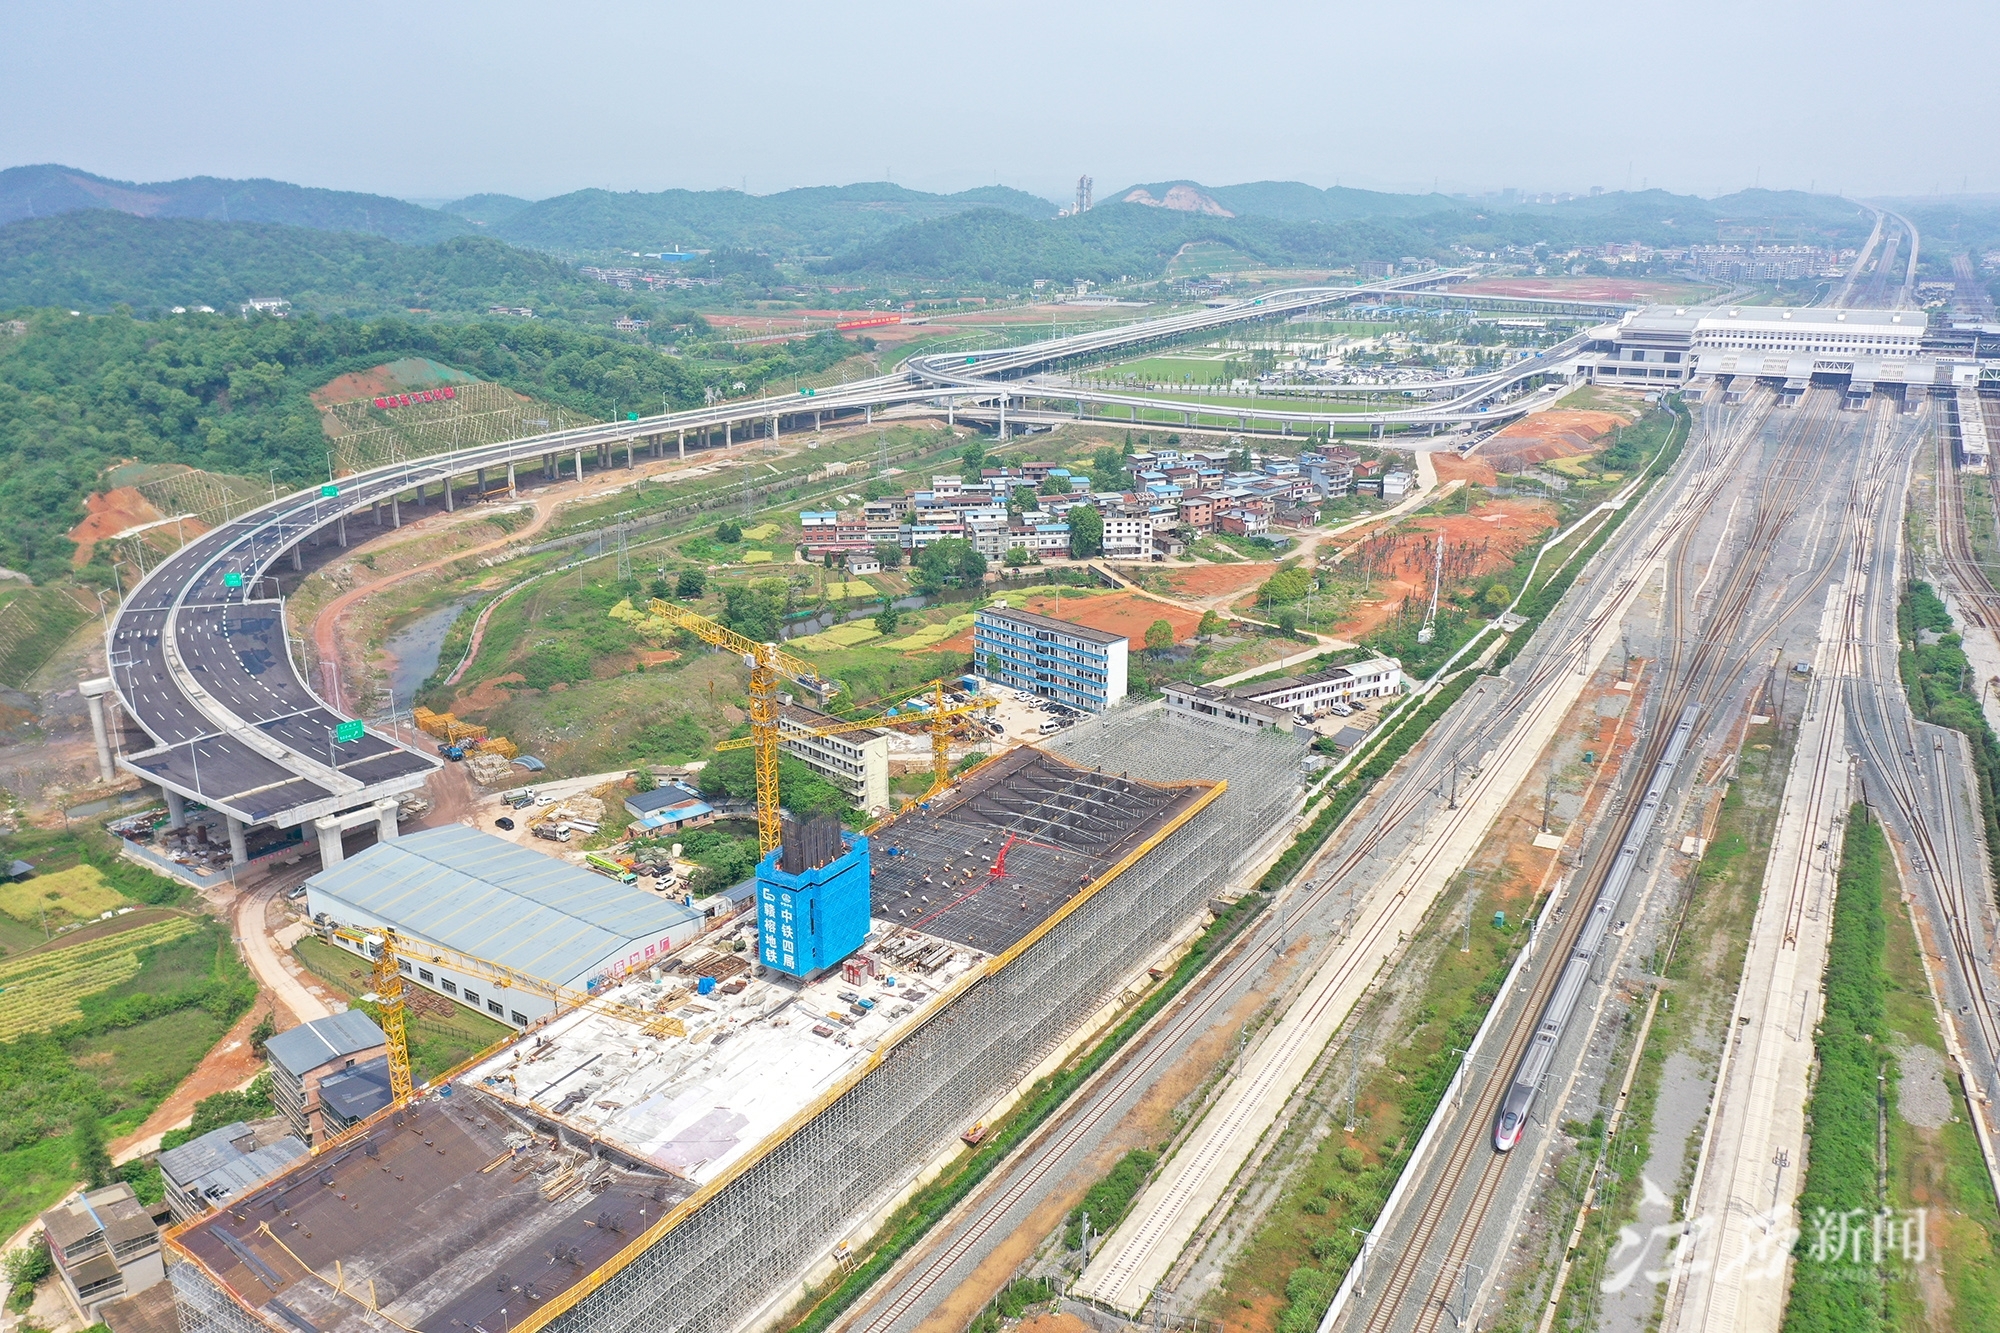 ▲跨庐山站立交工程项目是九江新建快速路控制性工程，上跨14股铁路线路。